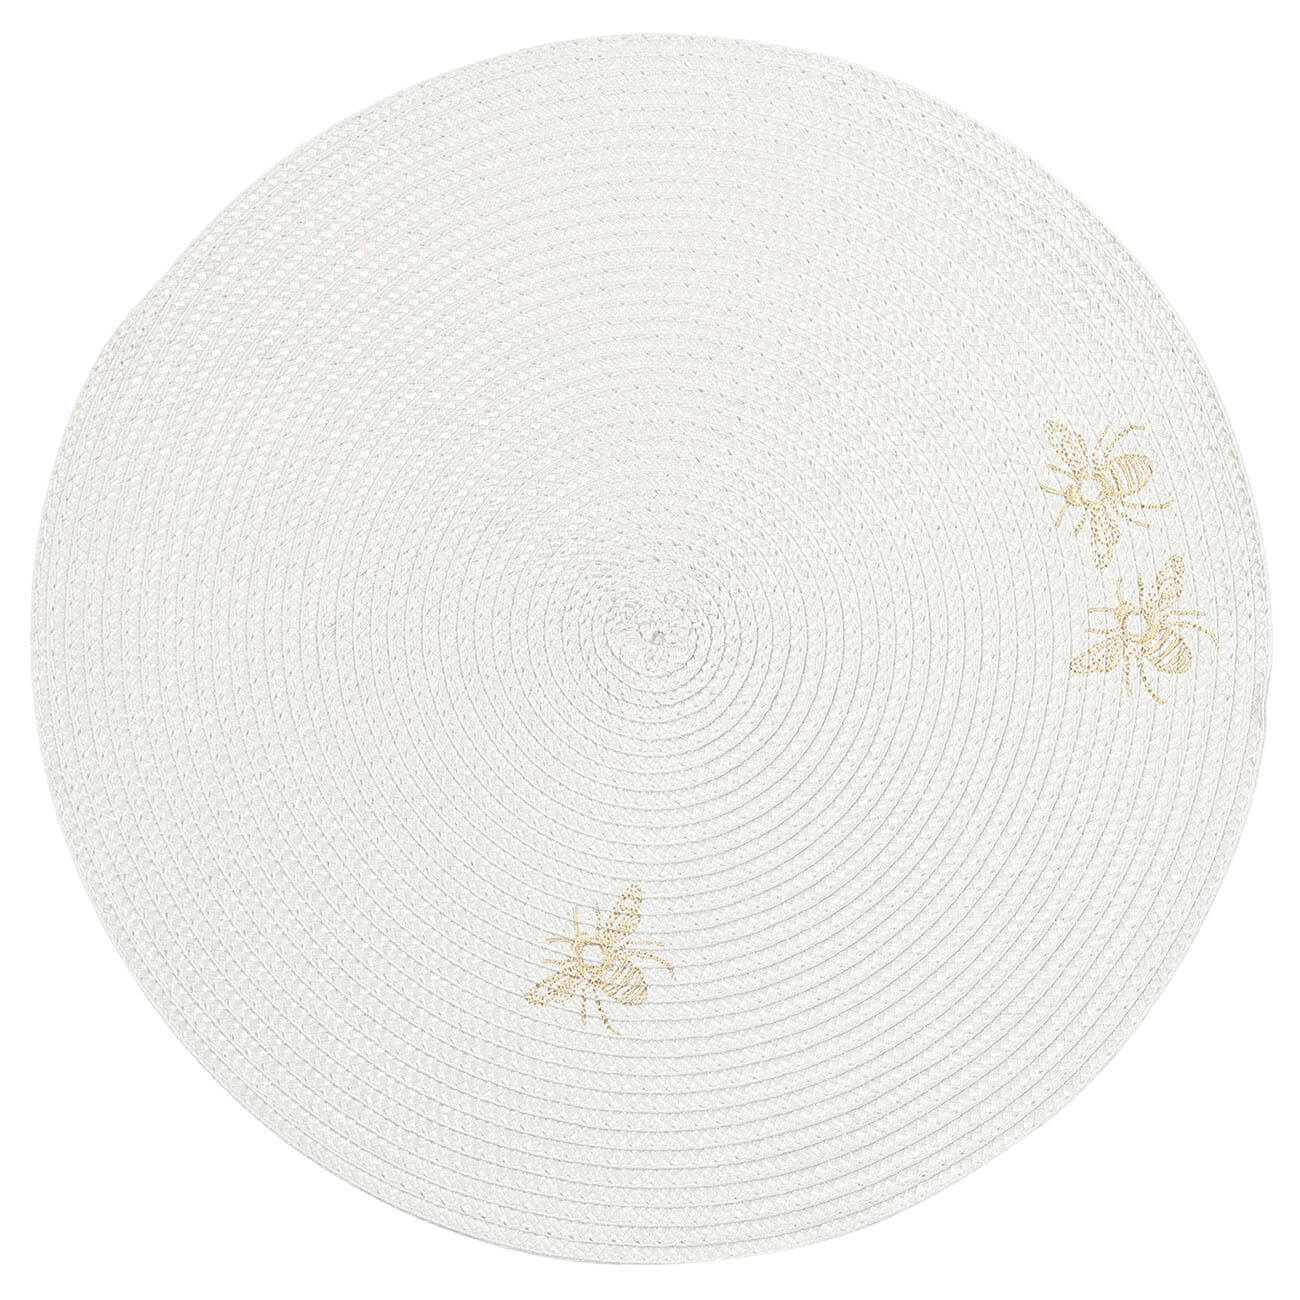 Салфетка под приборы, 38 см, полипропилен/ПЭТ, круглая, светло-серая, Пчелы, Circle embroidery салфетка для мытья посуды доляна 30×30 см